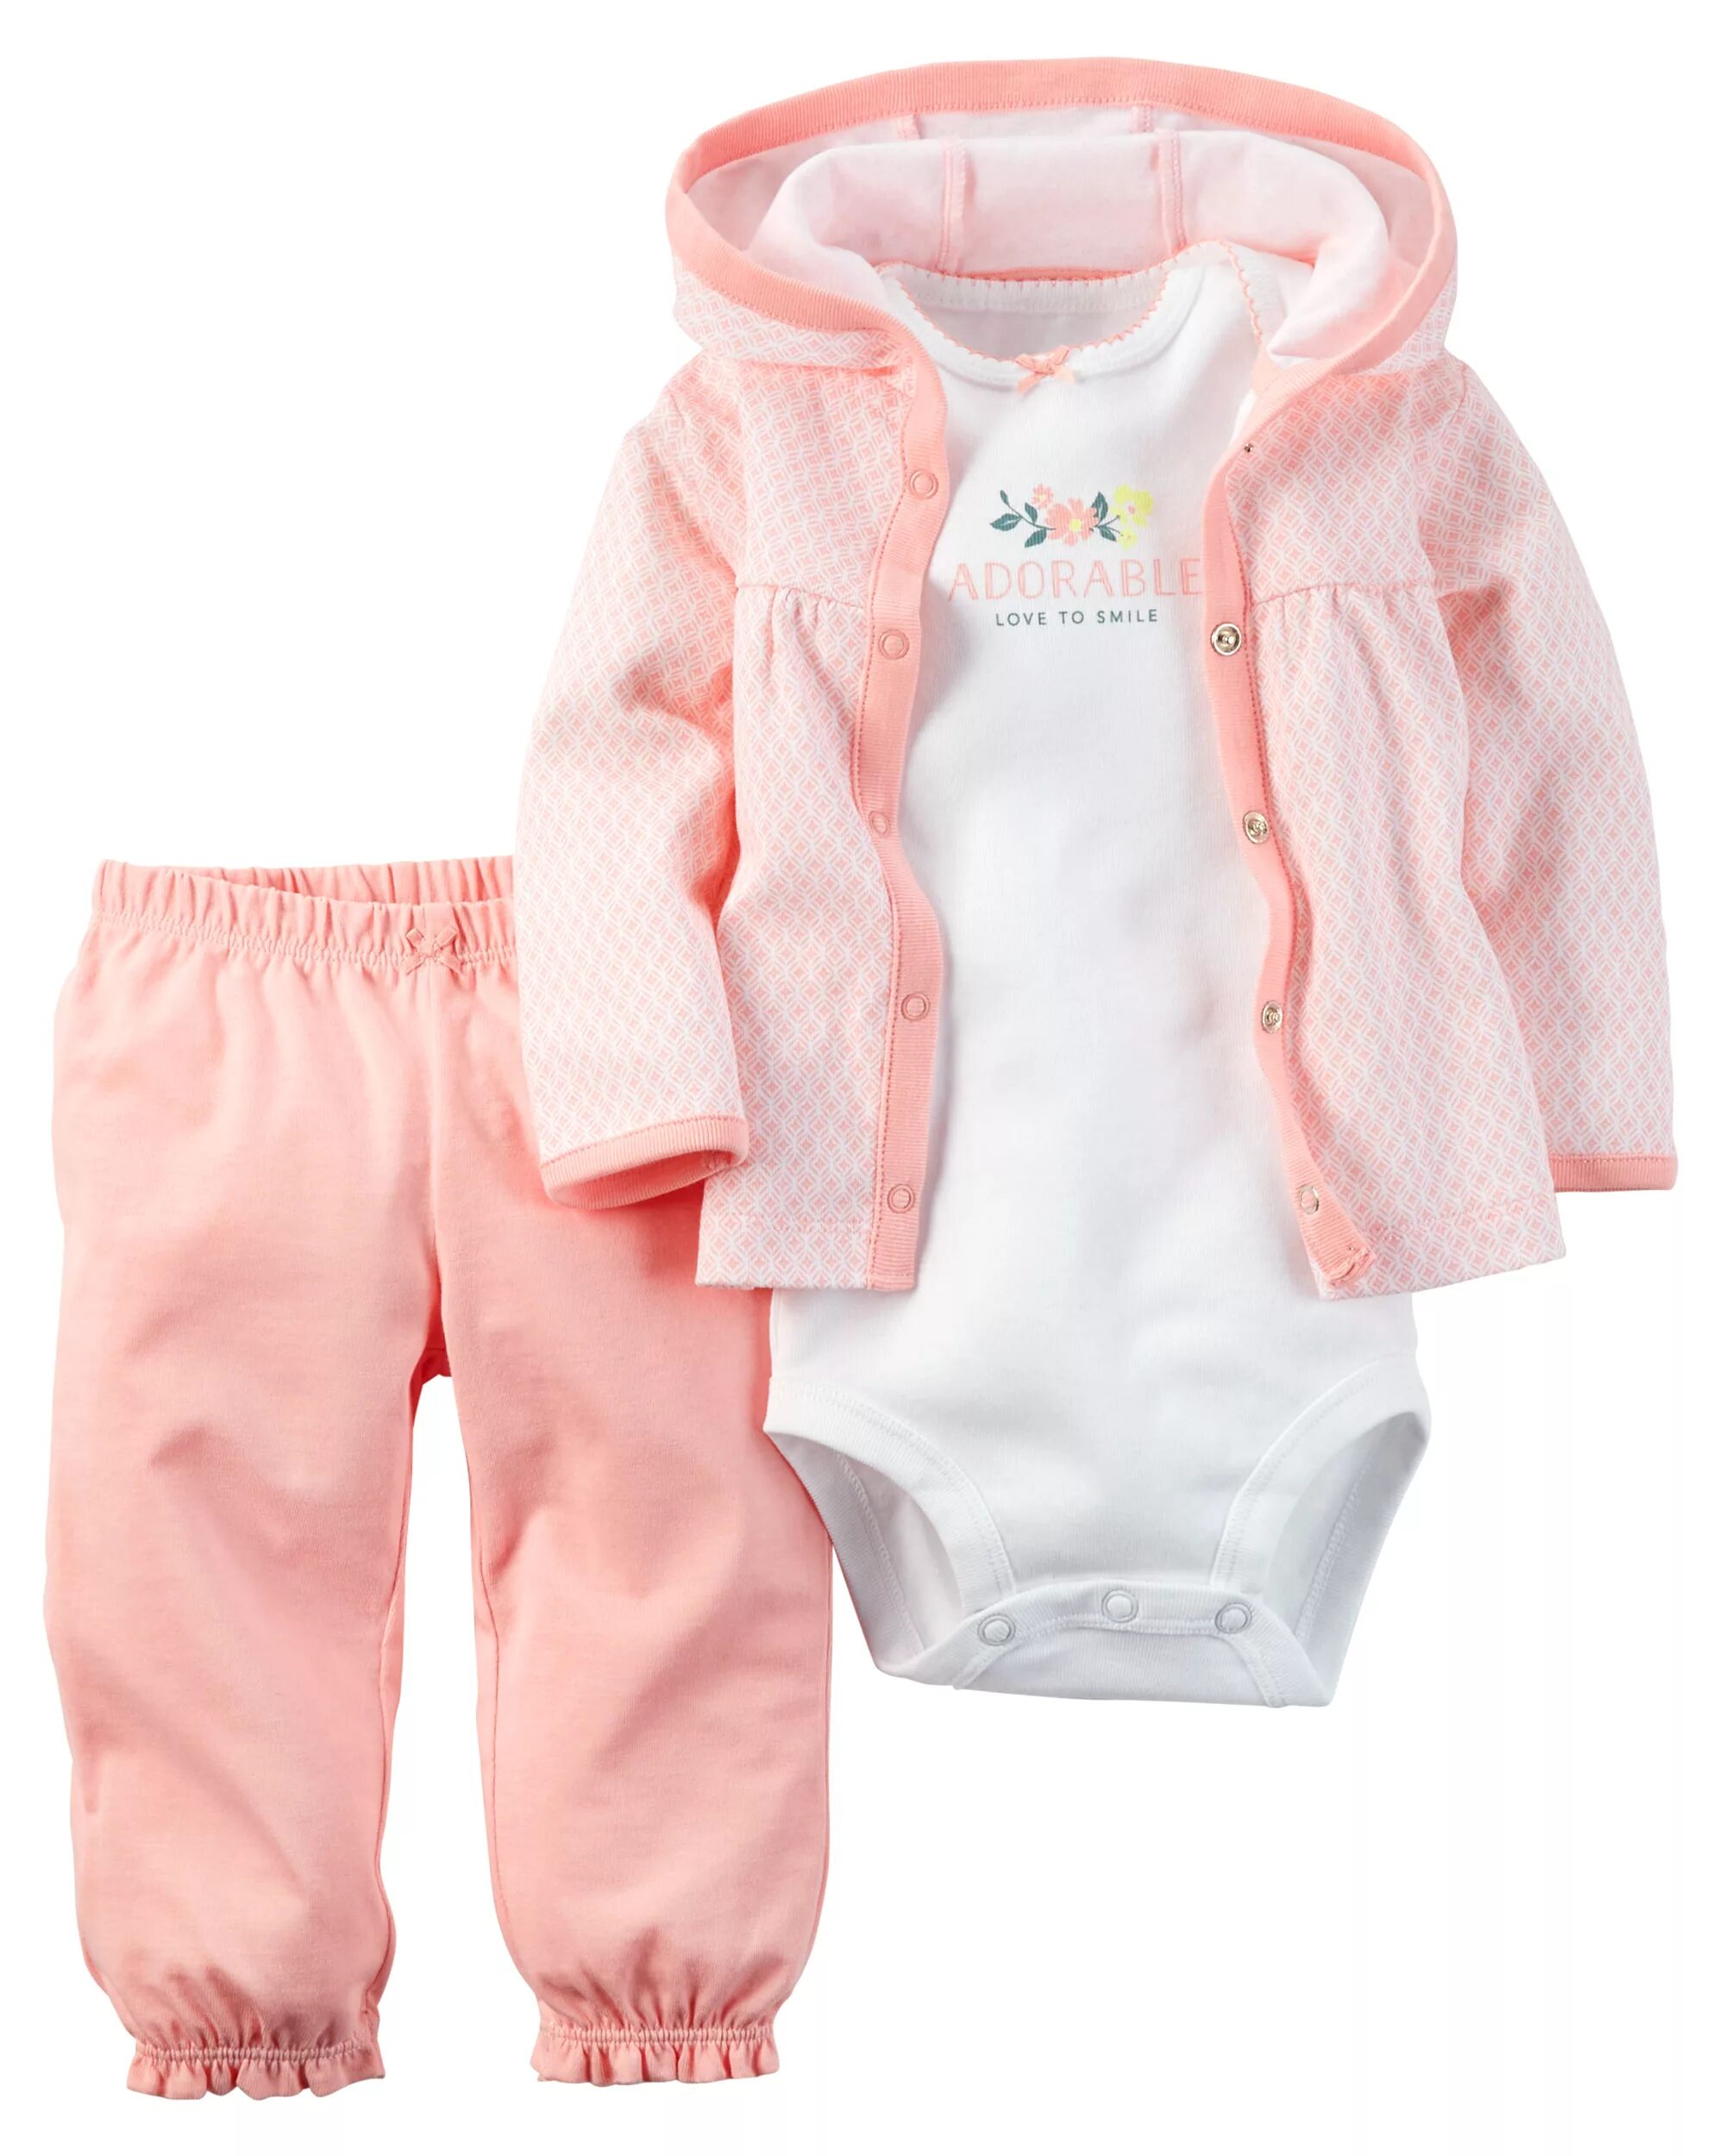 Ребенку 6 месяцев одежда. Костюм Carters 1h359510. Одежда для новорожденного. Вещи для новорожденных. Одежда для новорожденных девочек.